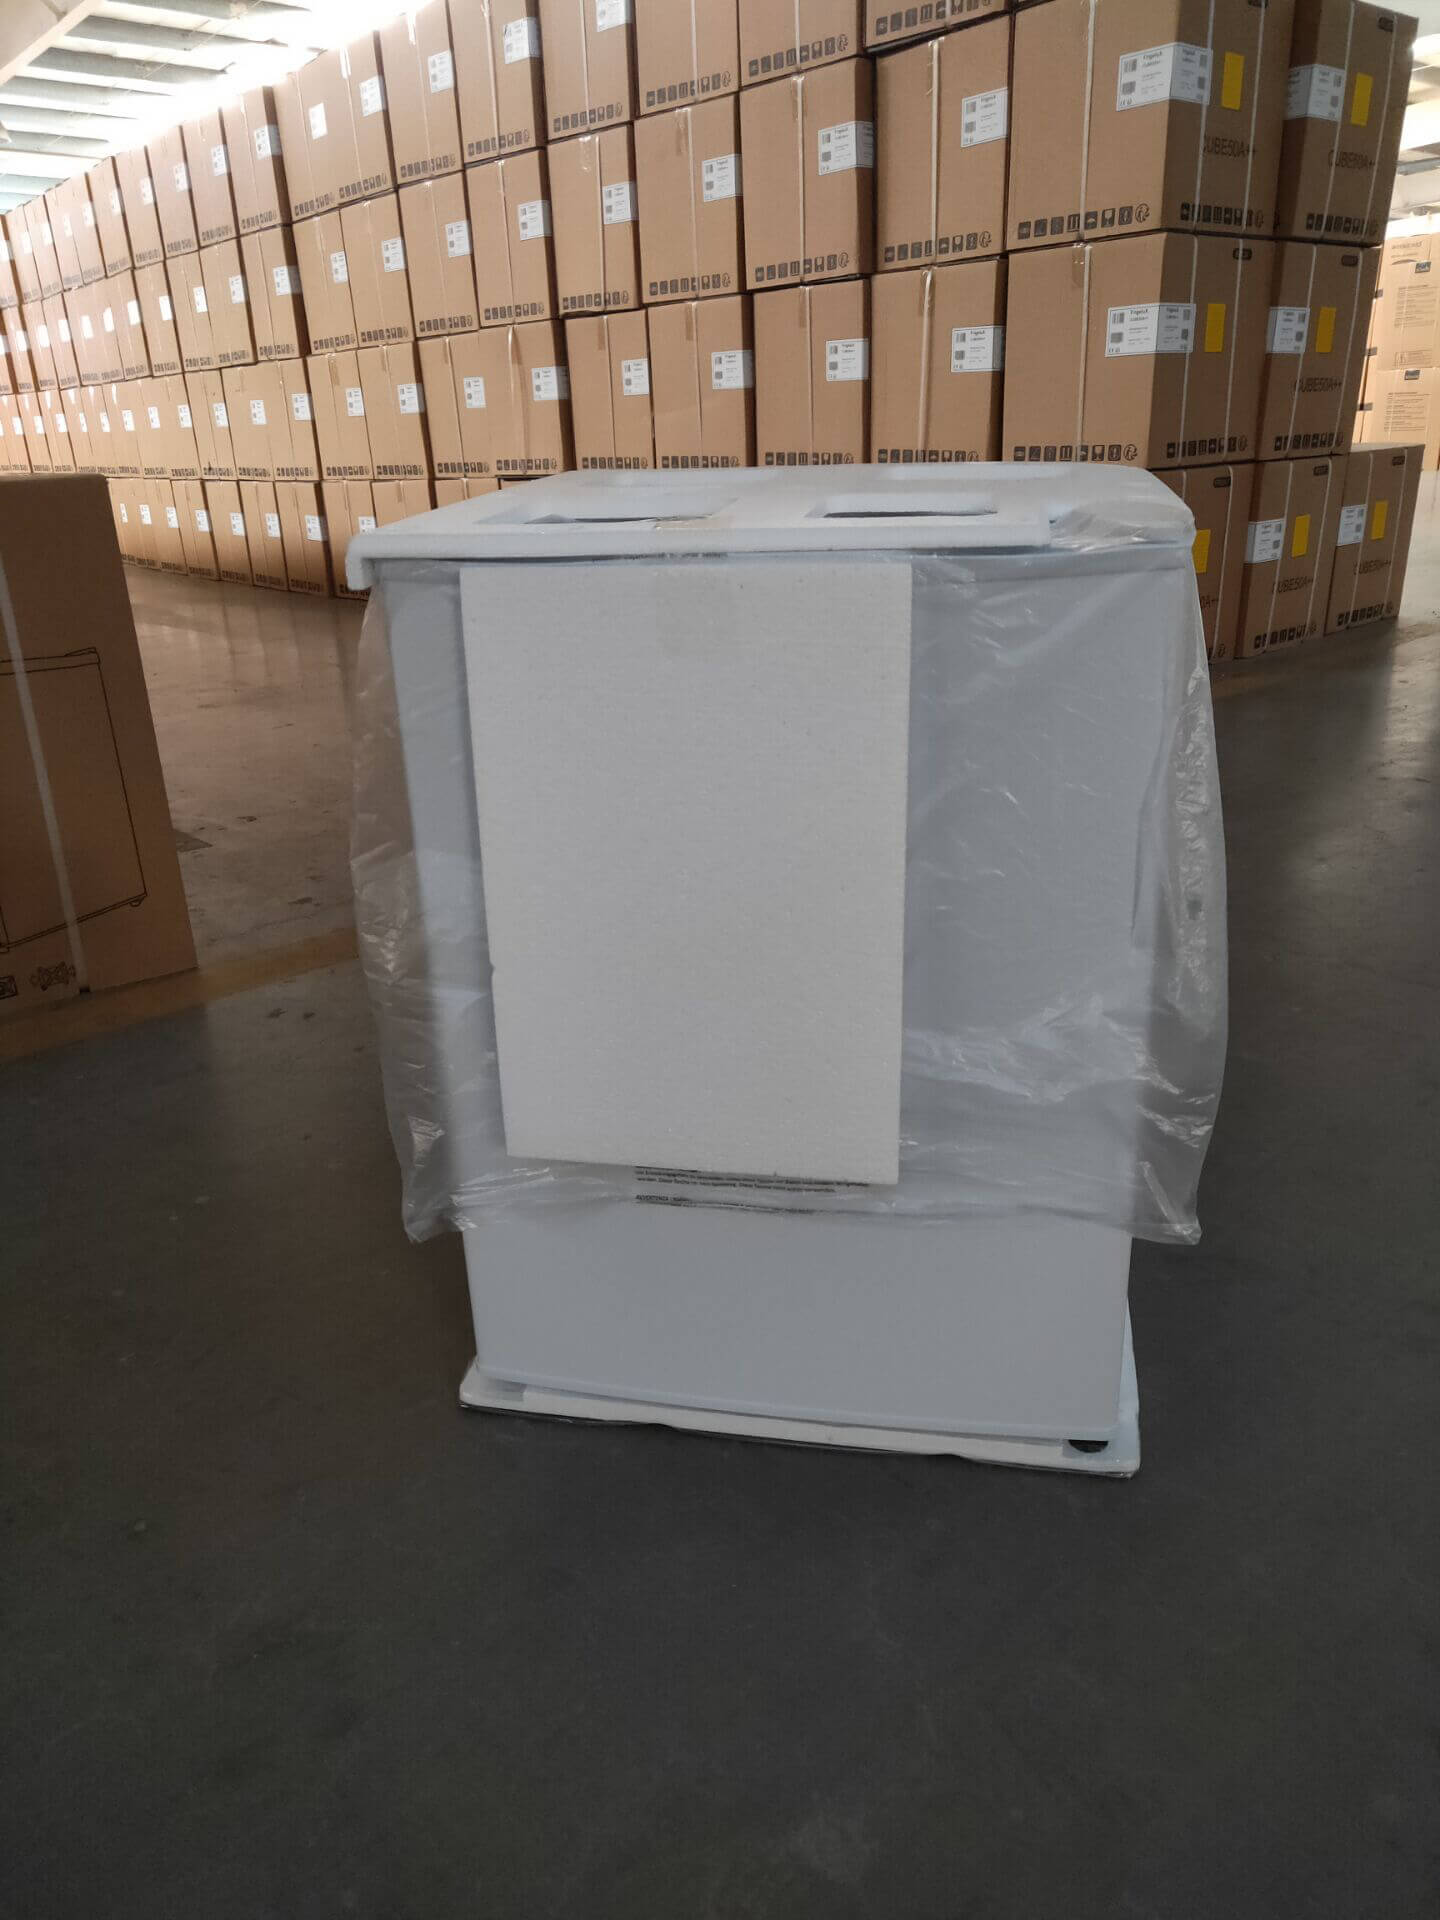 Smeta upright freezer TSD-60D6_Details of bulk photos